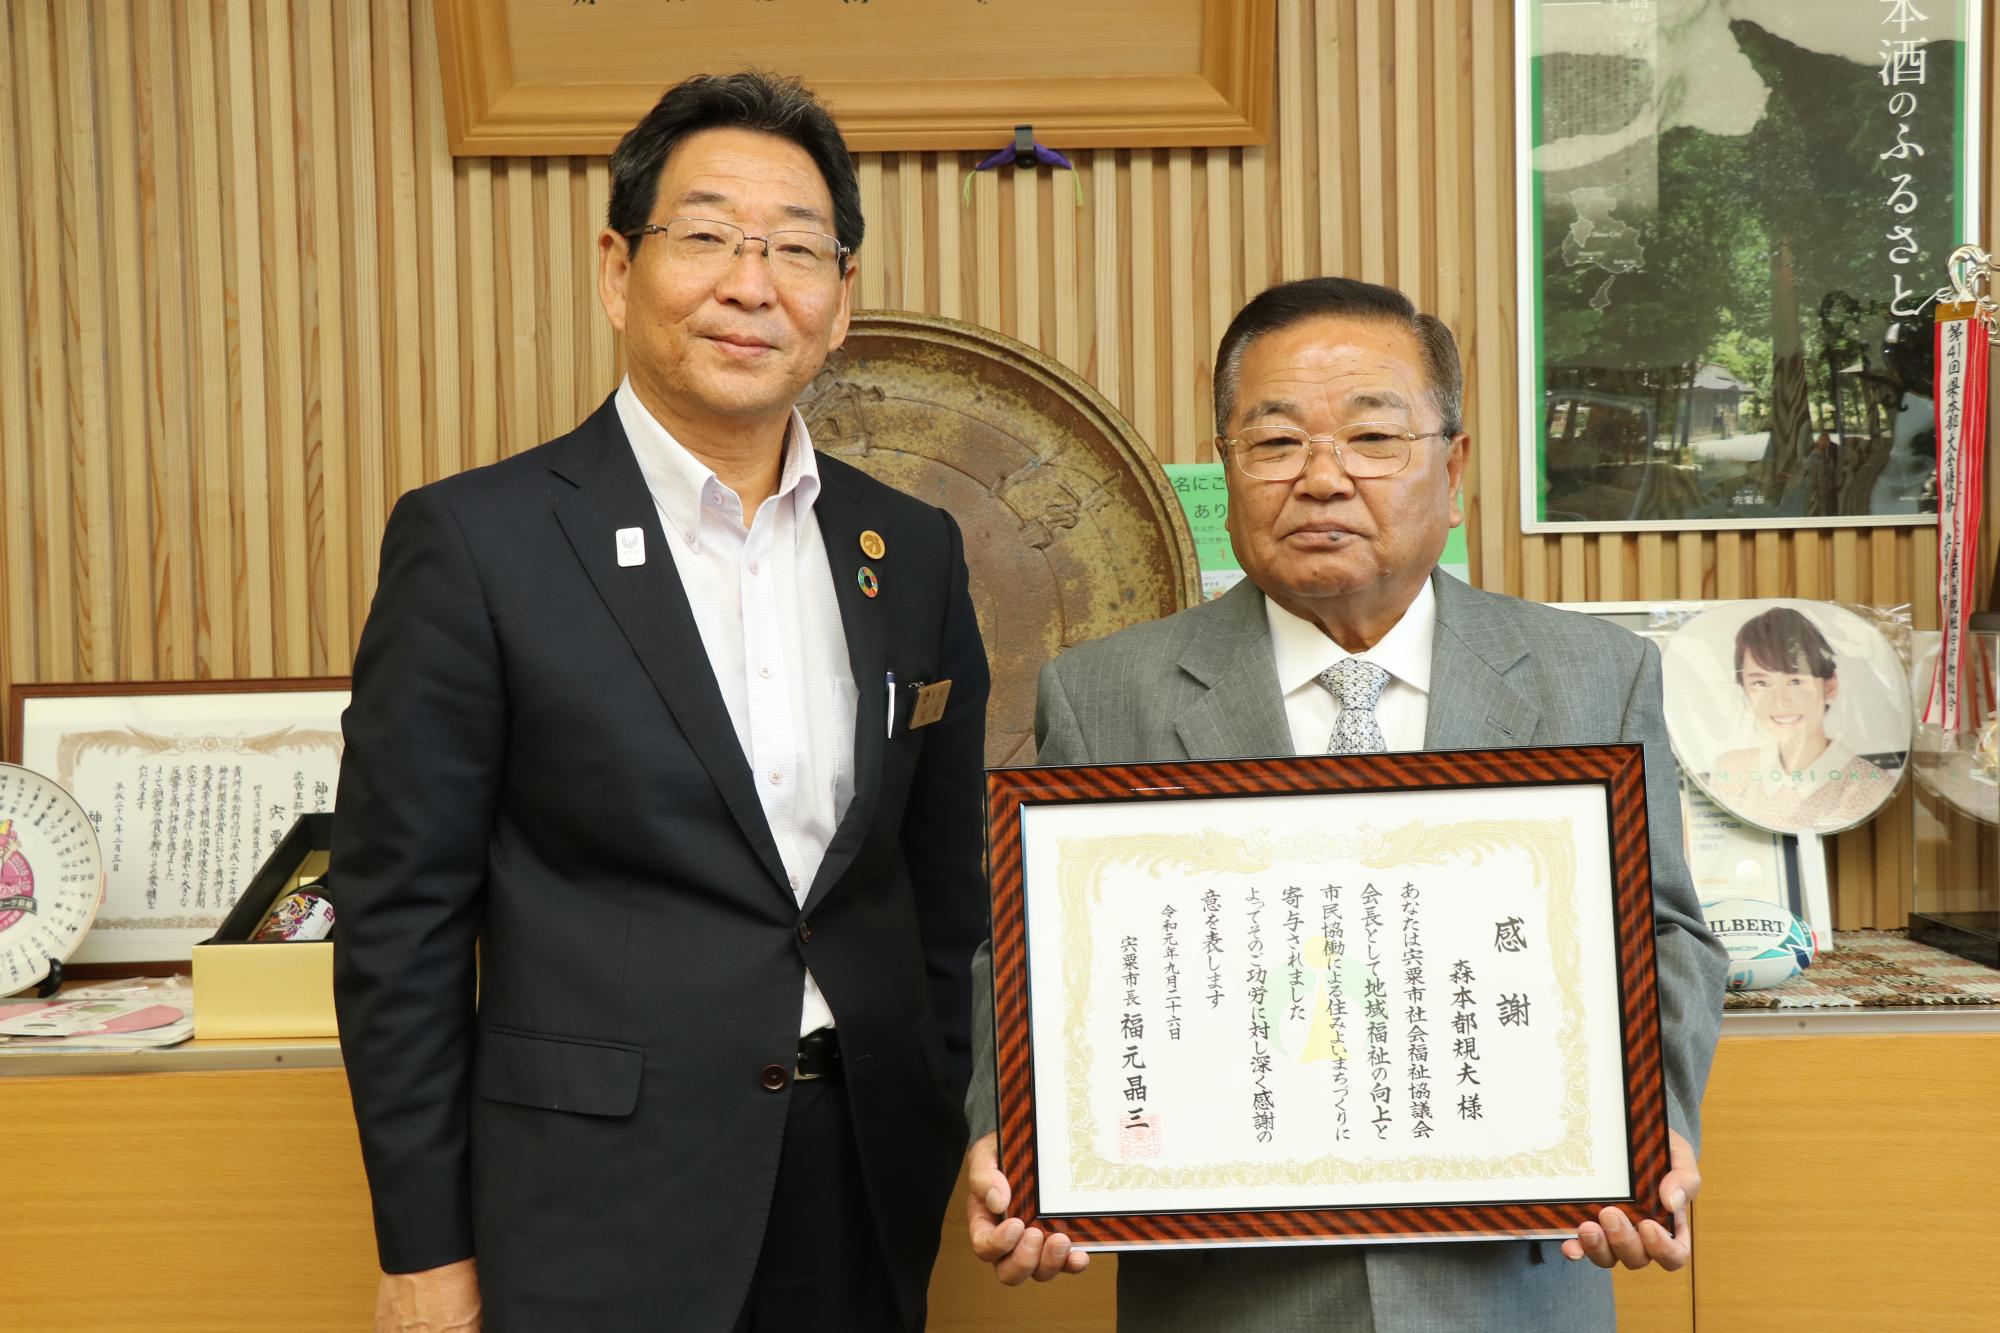 感謝状を手に笑顔を見せる森本さんと市長が並んでいる写真